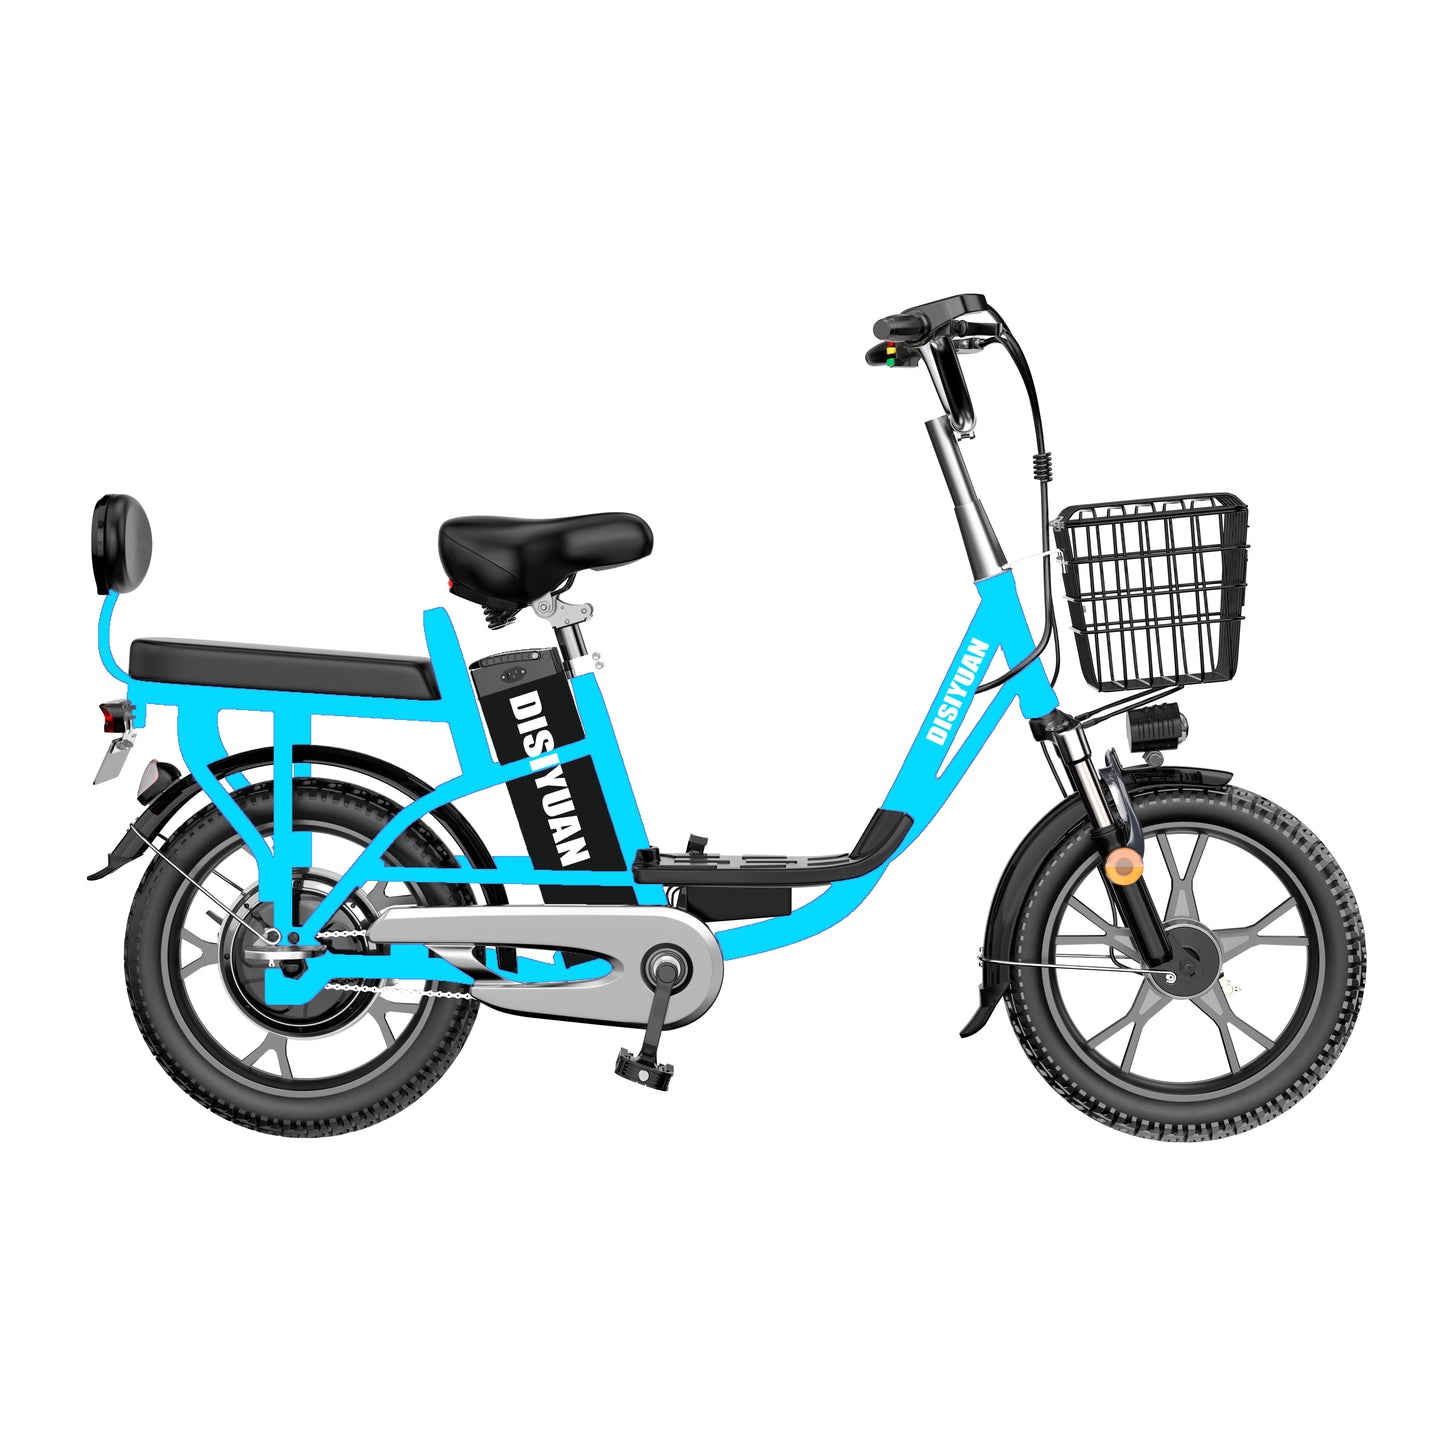 18in 20inch 10ah /12ah/15ah/20ah 48v 60v lithium battery 350w/500w motor electric bike electric bicycle adult city e bike cargo ebike